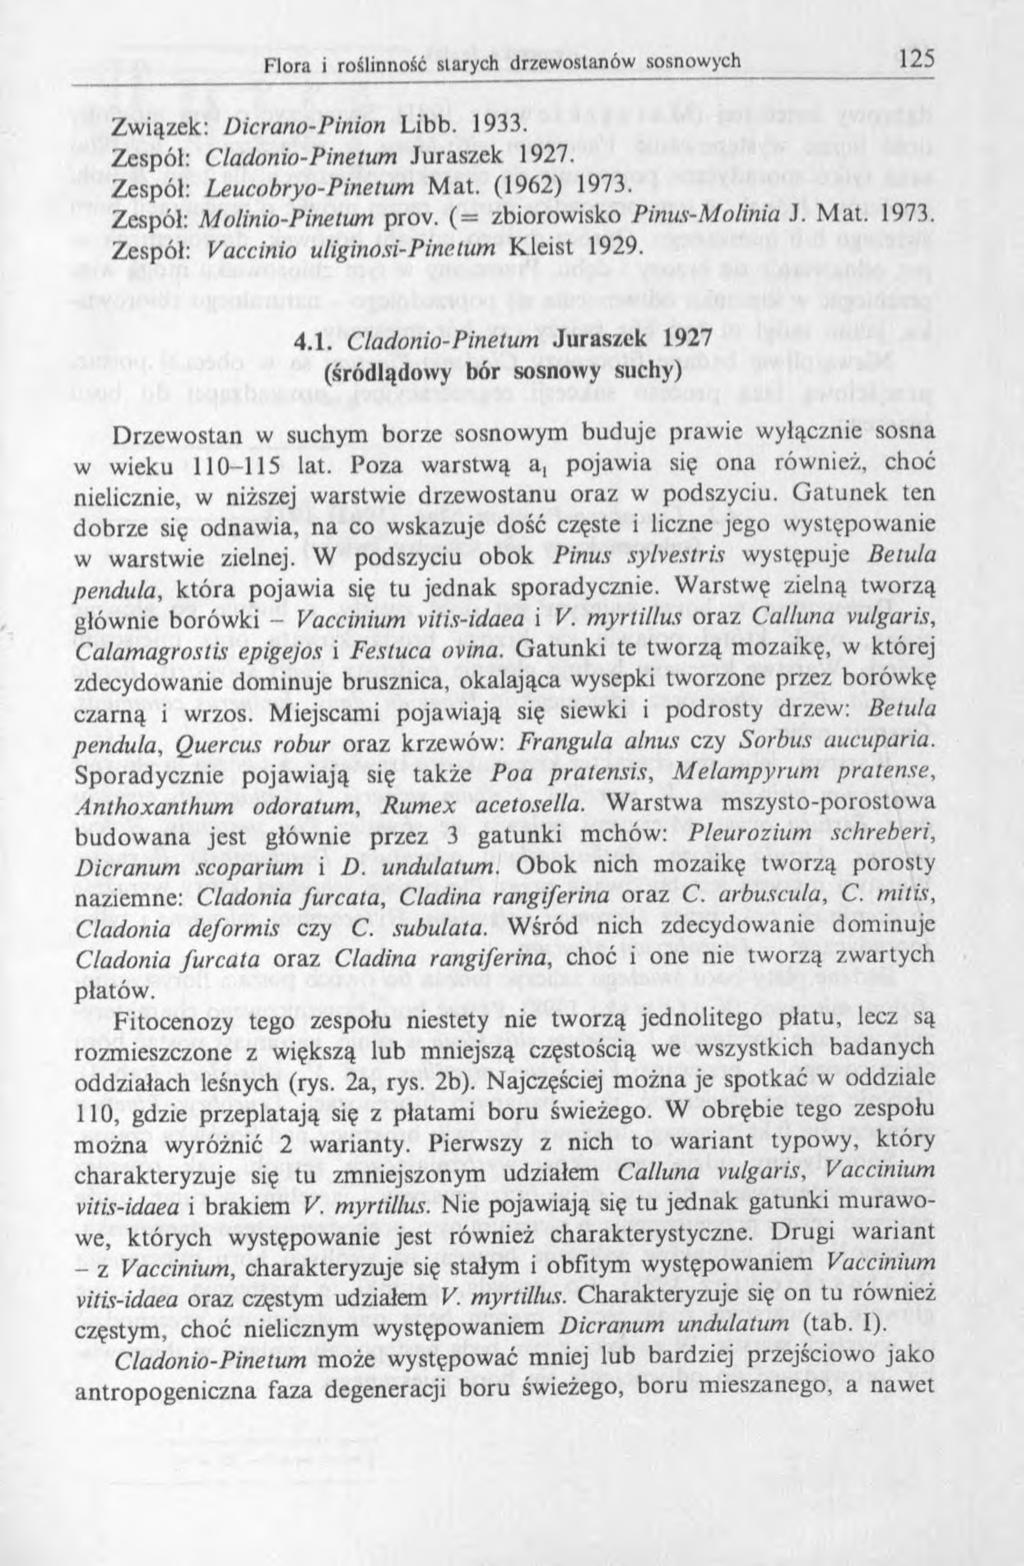 Związek: Dicrano-Pinion Libb. 1933. Zespól: Cladonio-Pine tum Juraszek 1927. Zespół: Leucobryo-Pinetum M at. (1962) 1973. Zespół: Molinio-Pinetum prov. ( = zbiorowisko Pinus-Molinia J. M at. 1973. Zespół: Vaccinio uliginosi- Pine tum Kleist 1929.